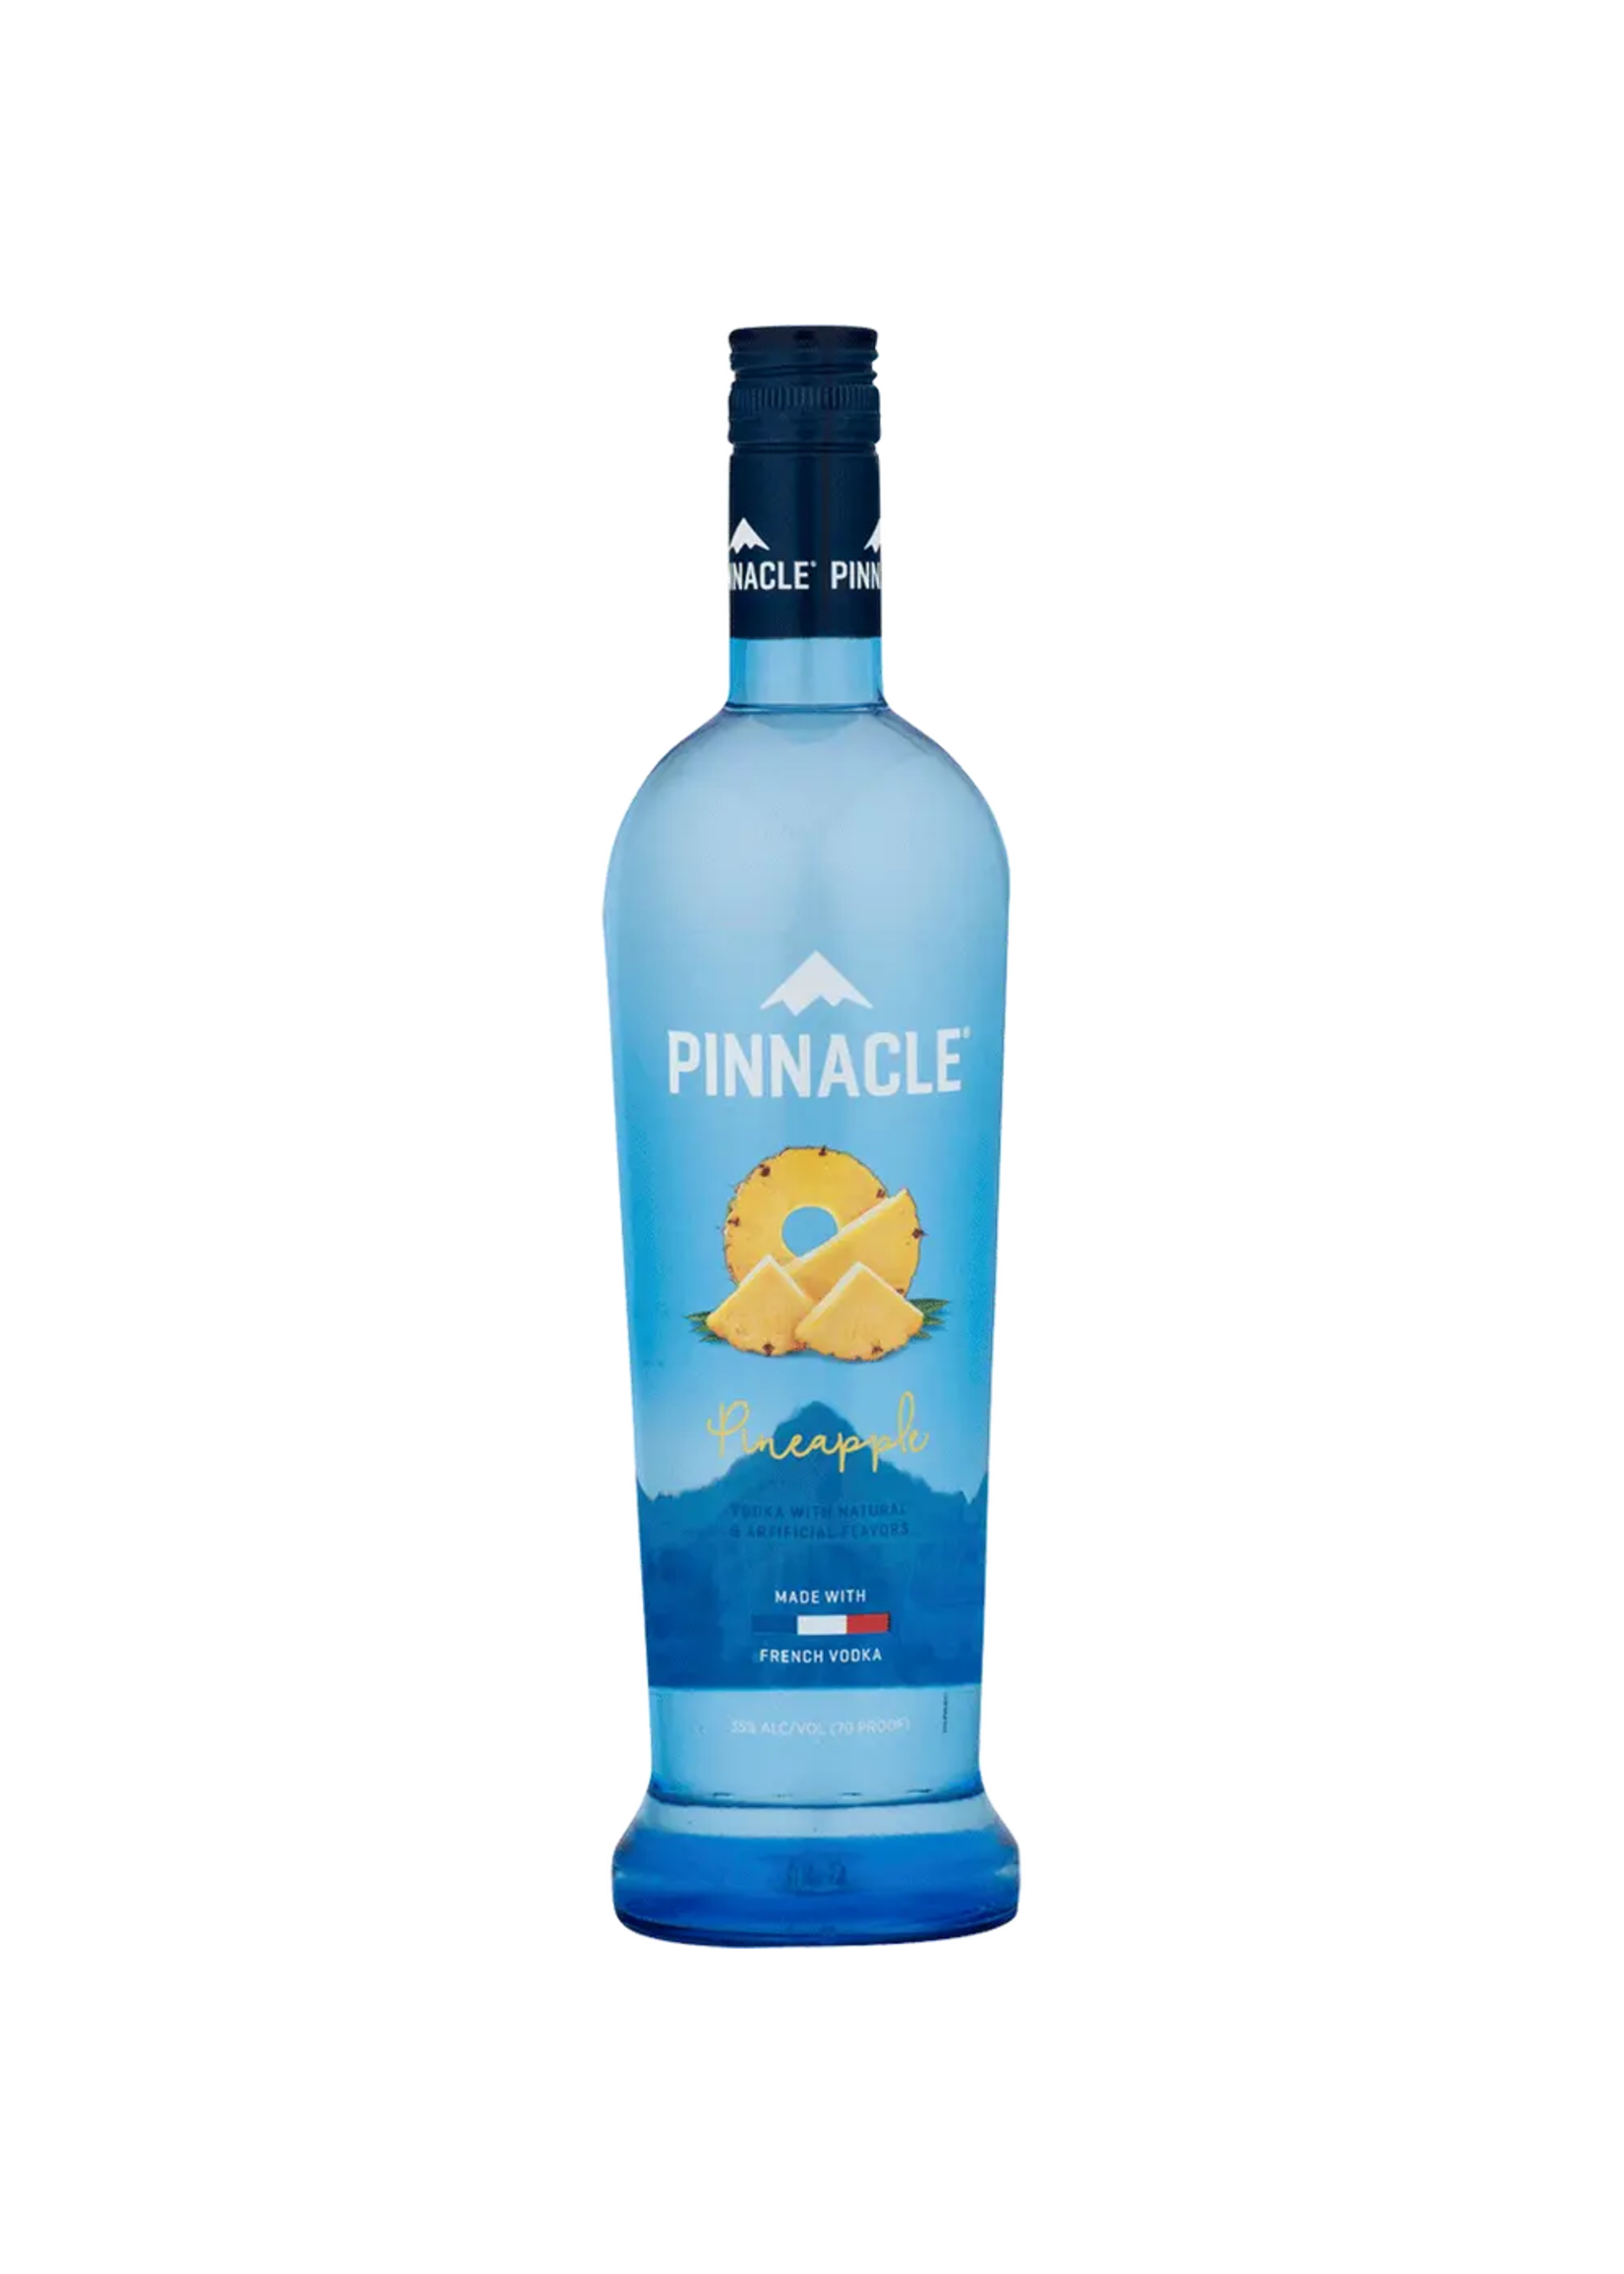 Pinnacle Pinnacle Pineapple Flavored Vodka 60Proof 750ml